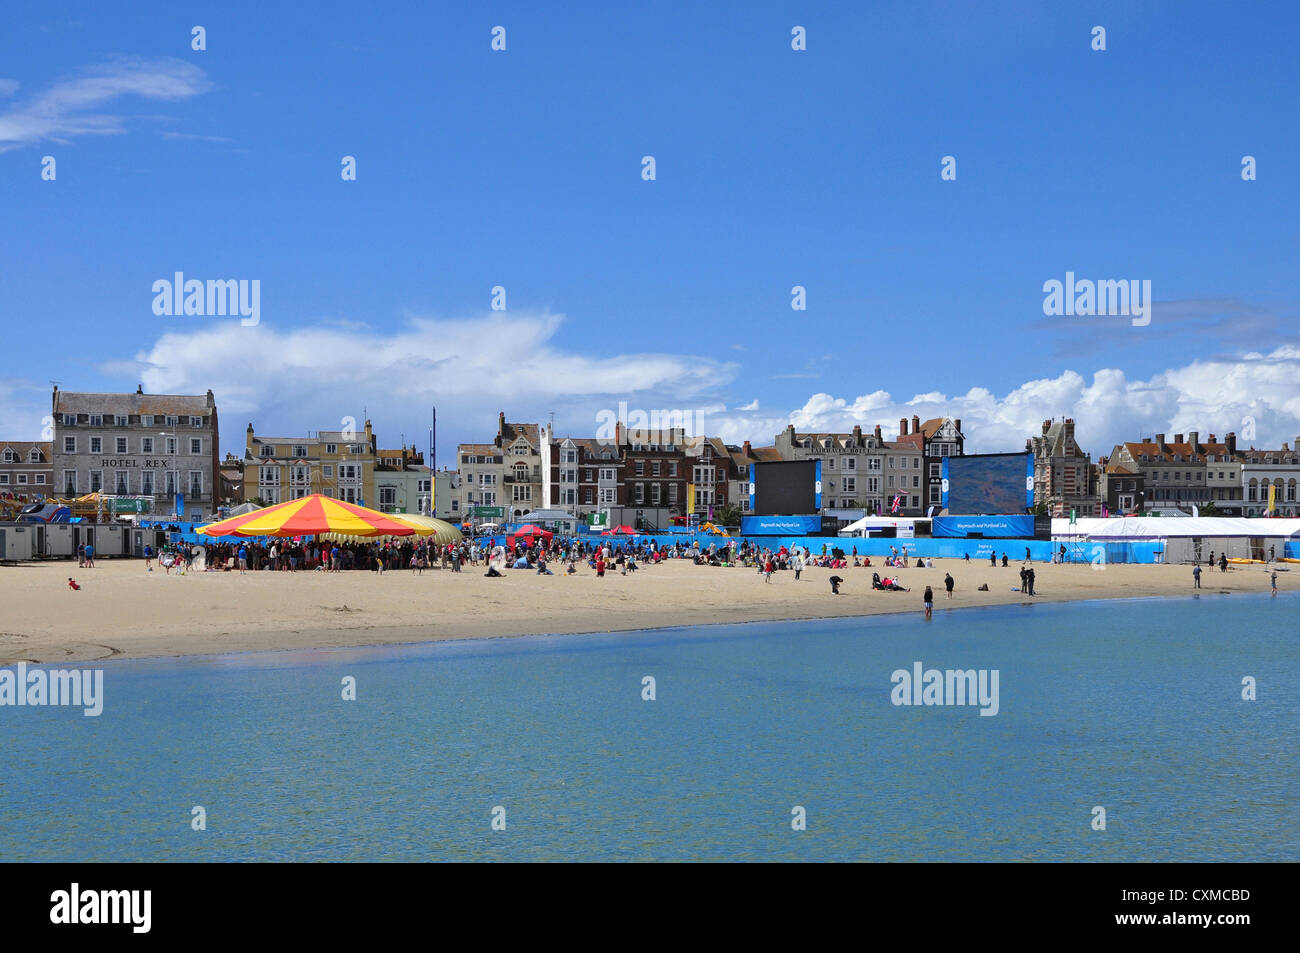 Spiaggia di Weymouth, gare di vela su grandi schermi durante le Olimpiadi di Londra 2012. Foto Stock